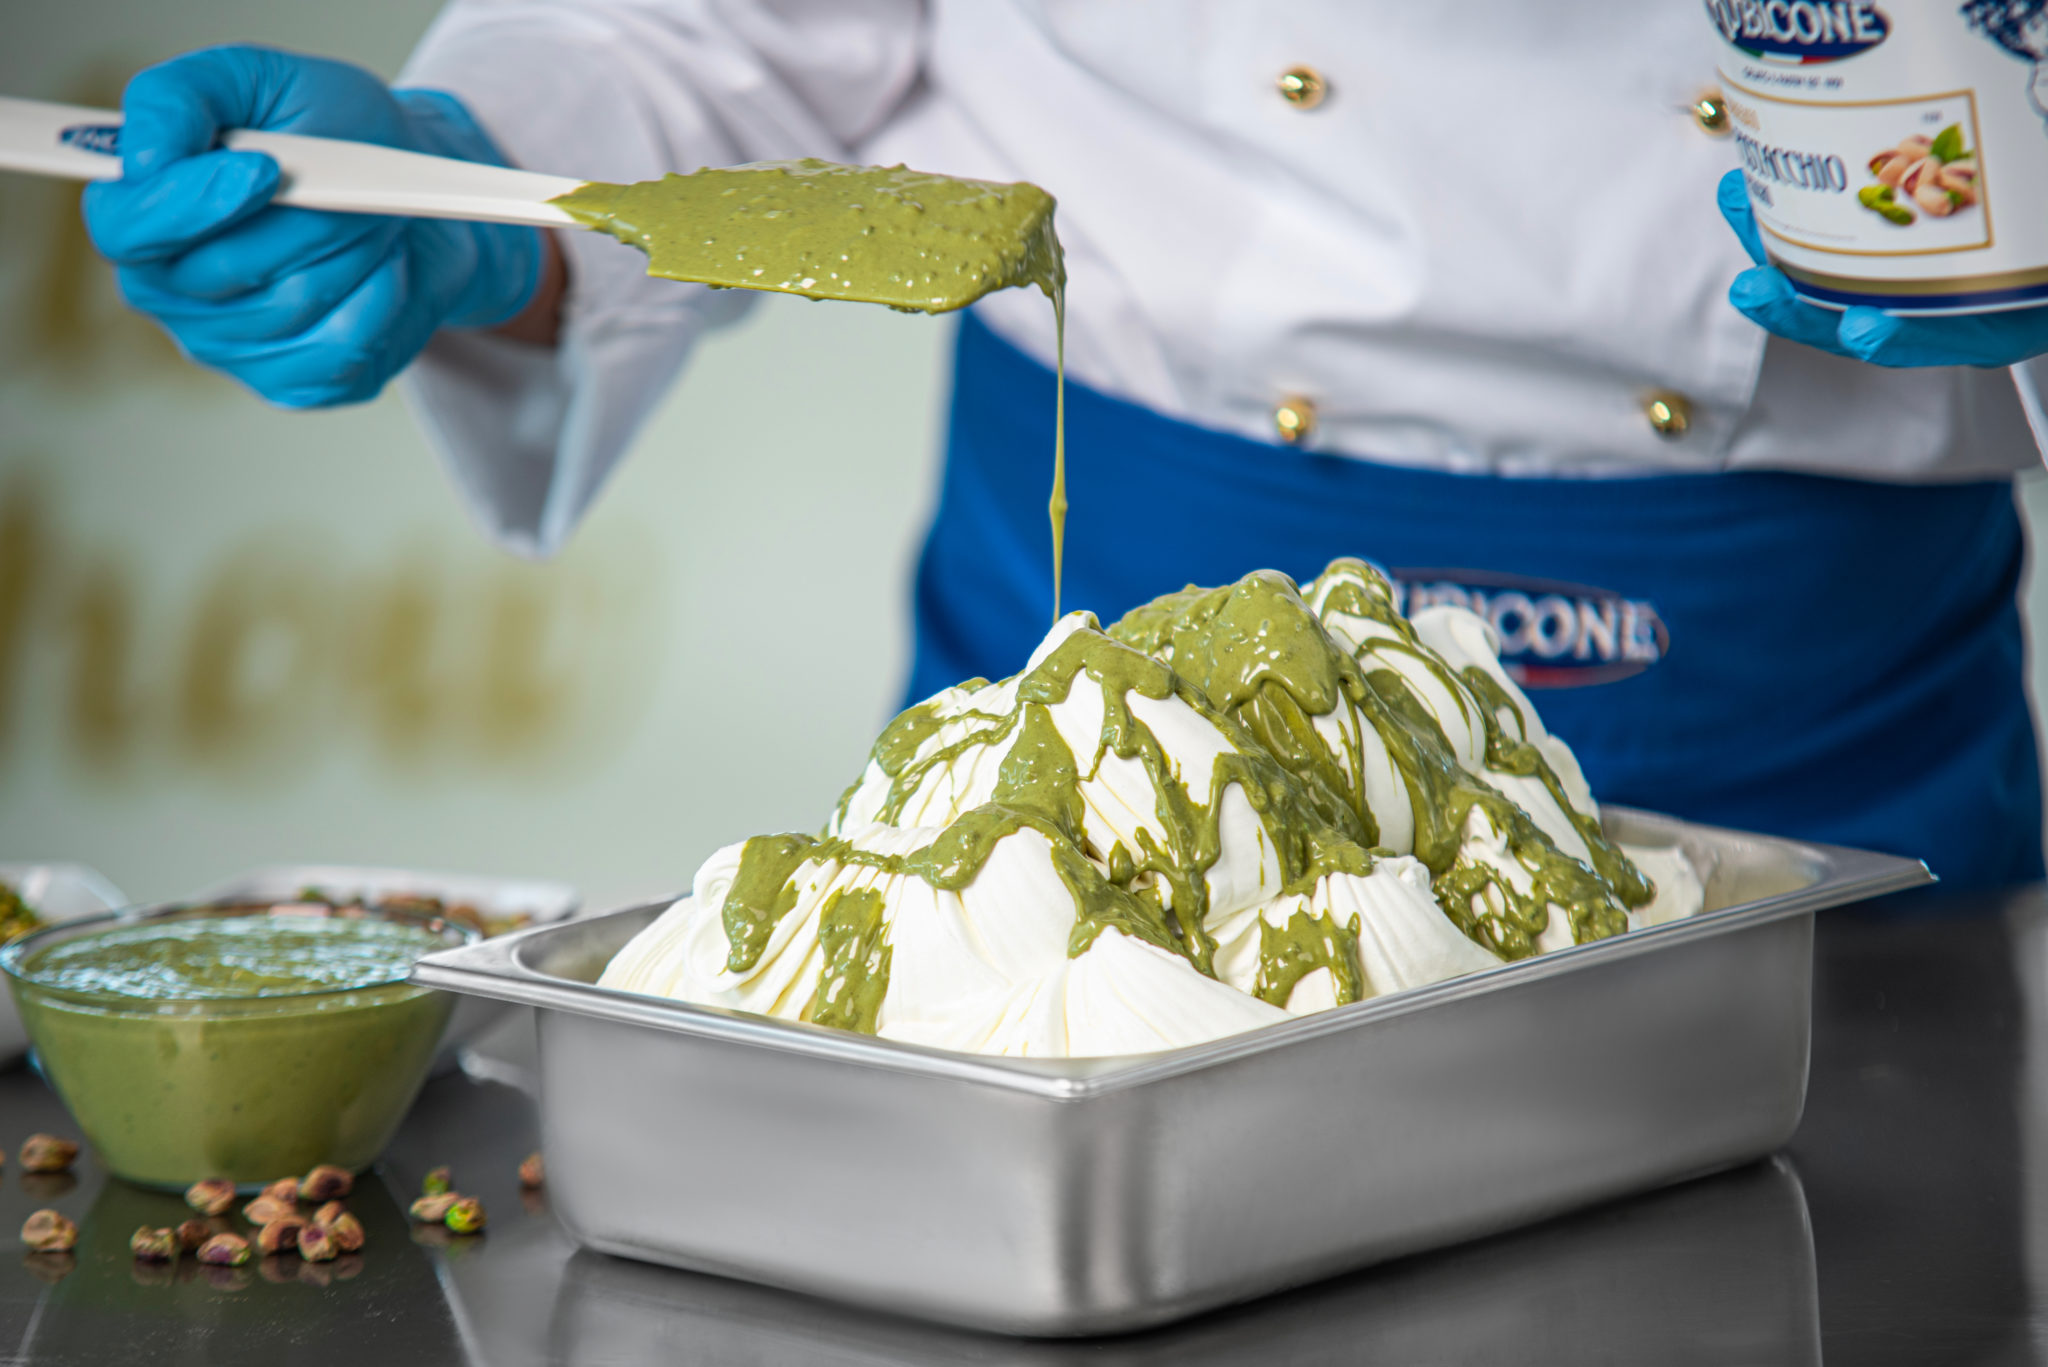 El Auténtico Sabor Italiano: Prepara un helado al Pistacho de Calidad con Prodotti Rubicone